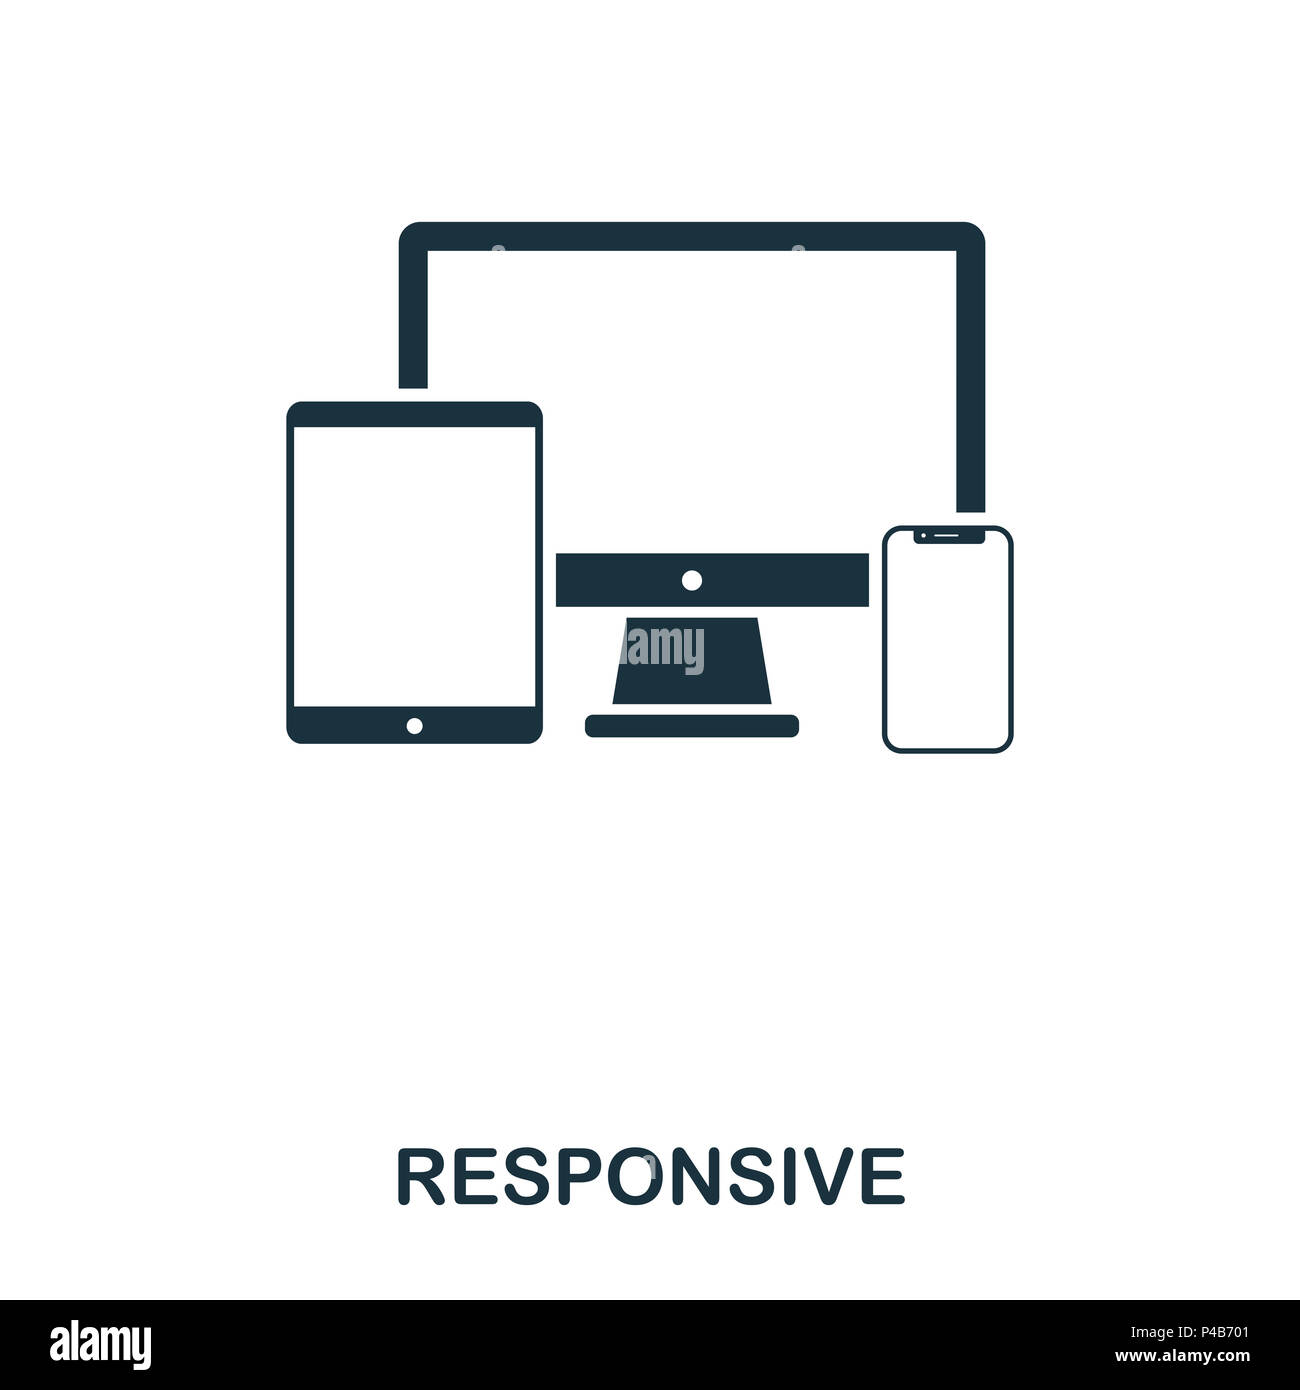 responsive icon